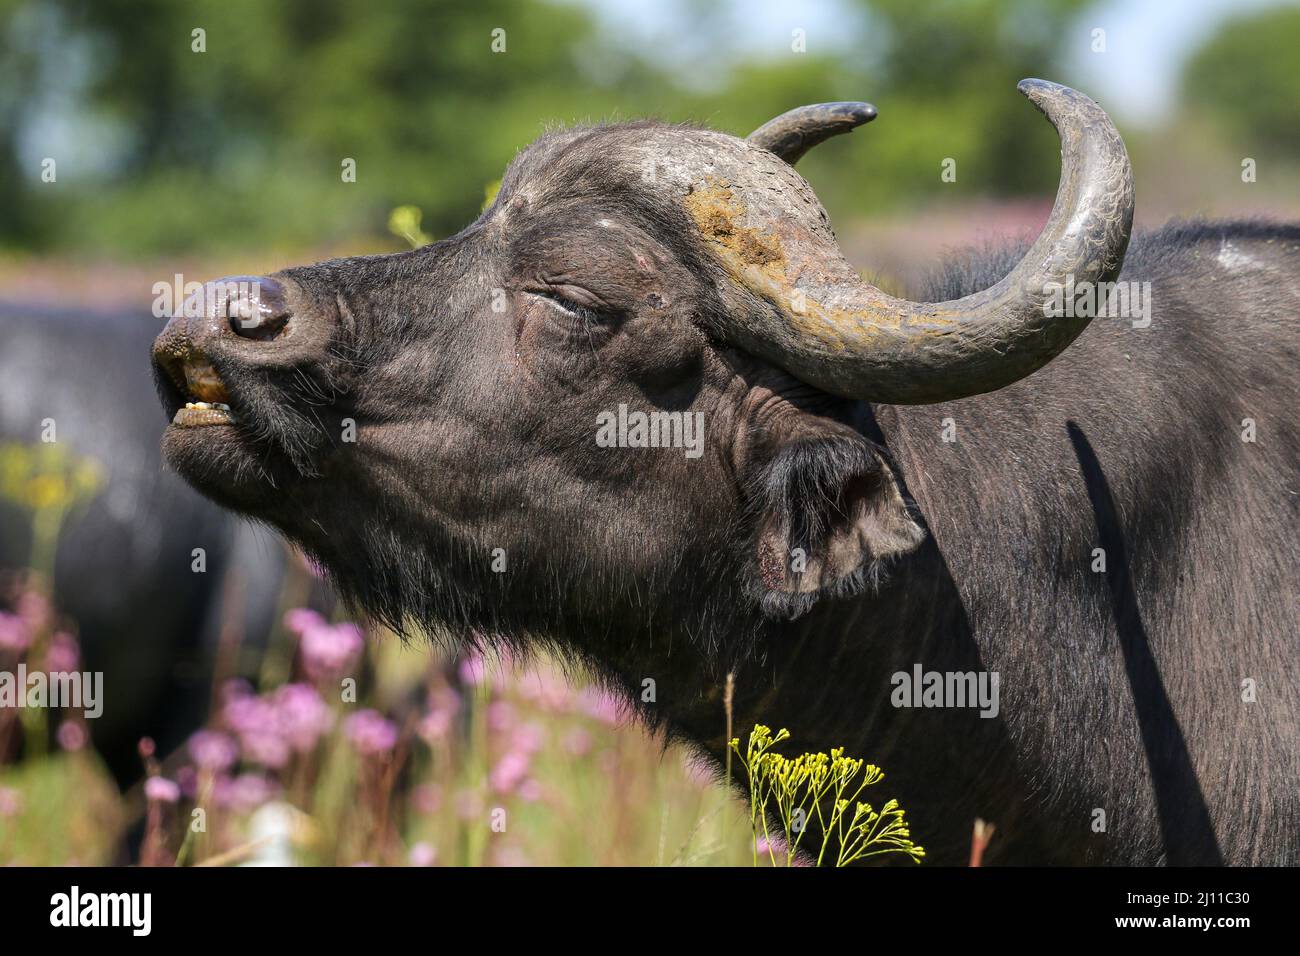 Buffalo exhibiting the flehmen response, South Africa Stock Photo